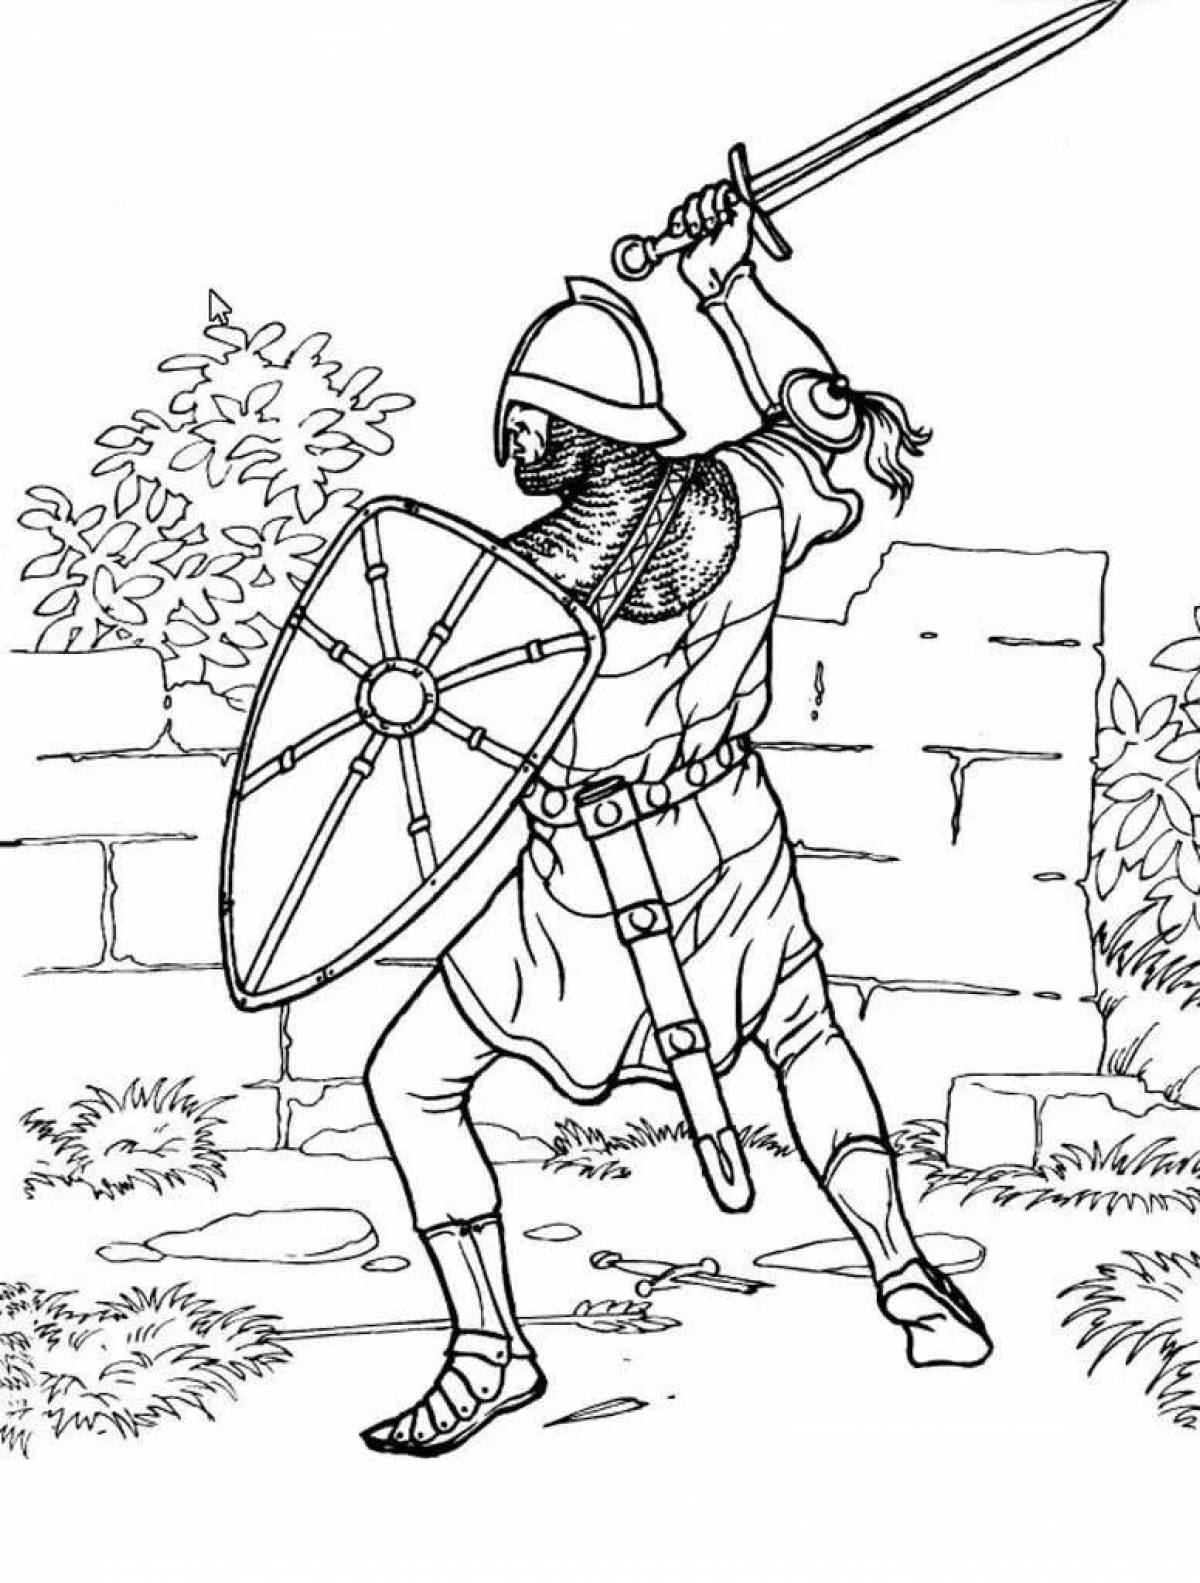 Impressive armor knight coloring book